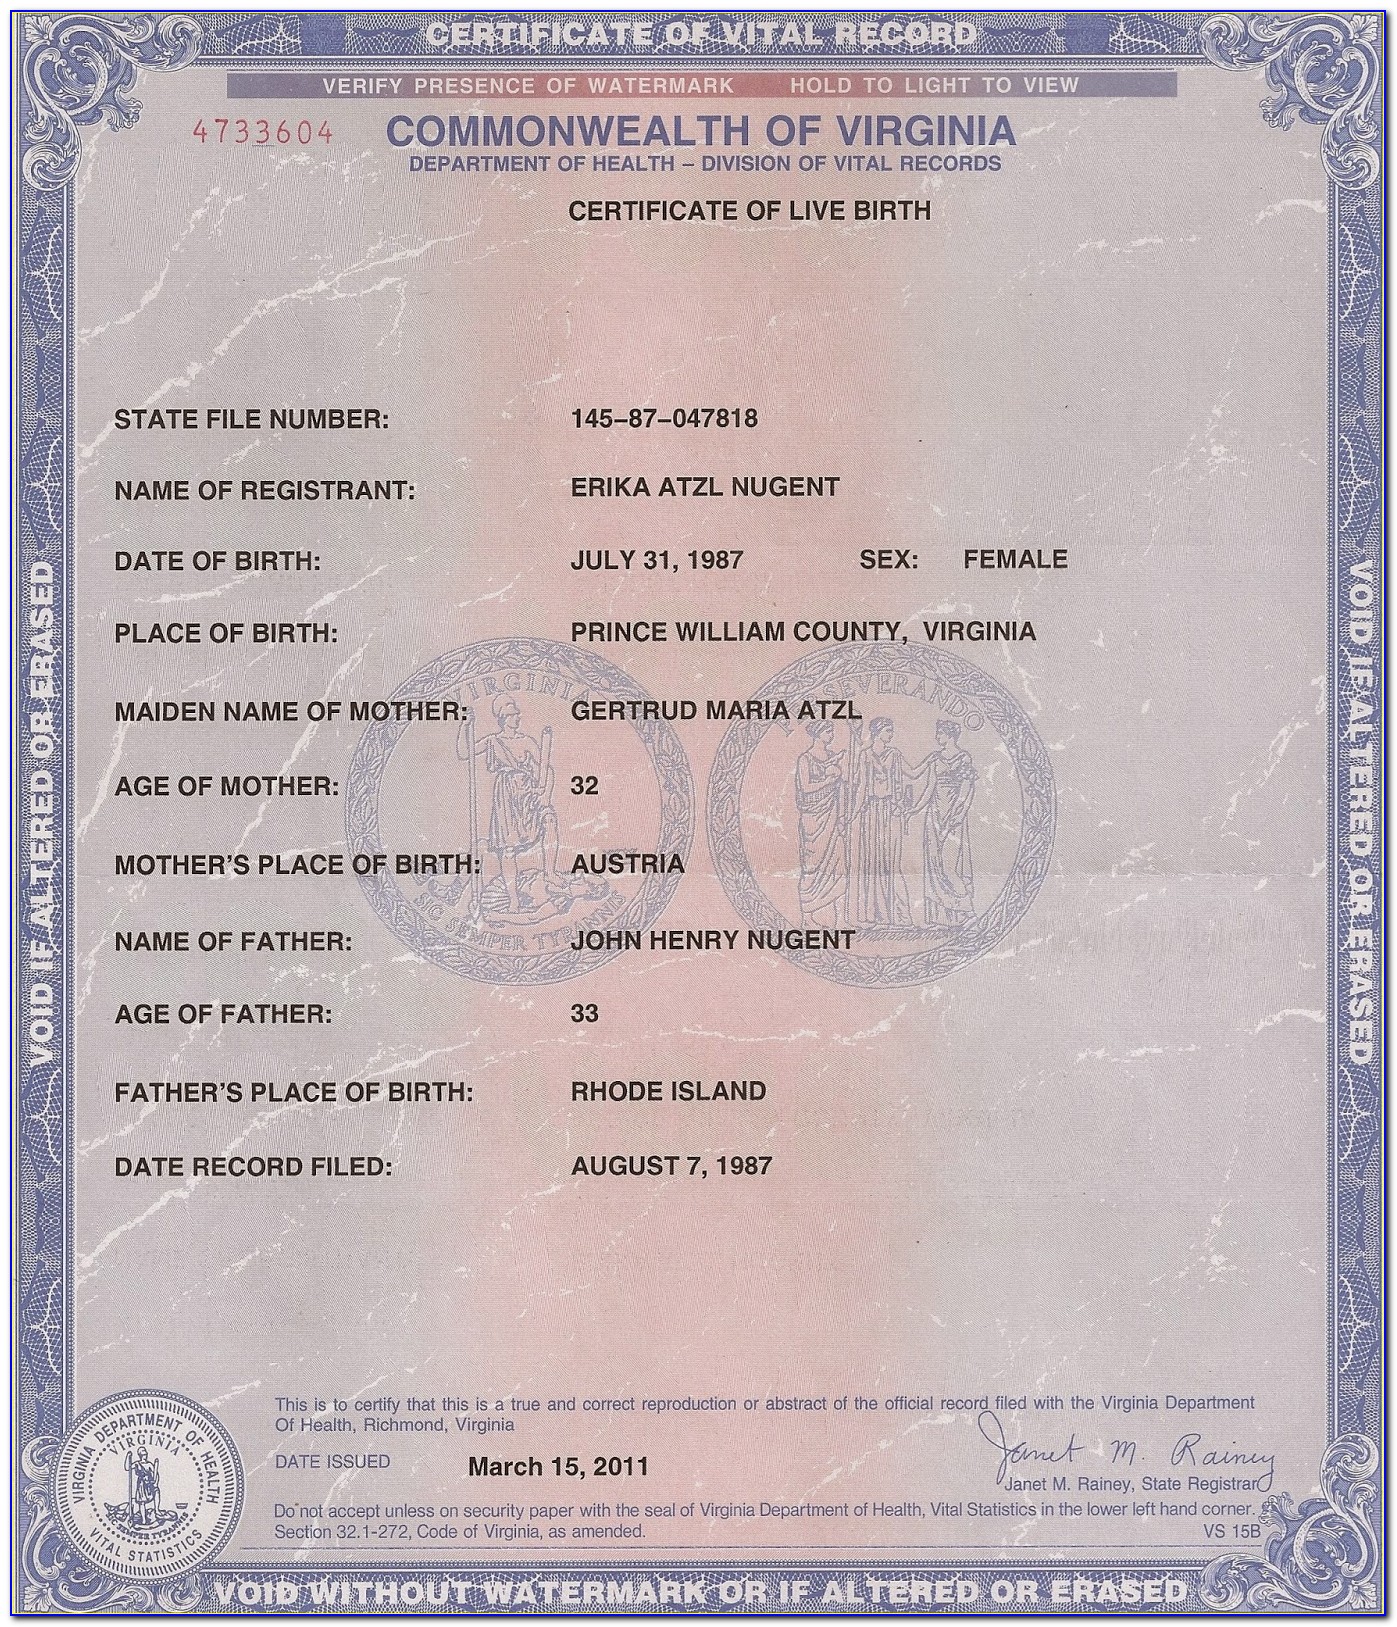 Sc Vital Records Birth Certificate